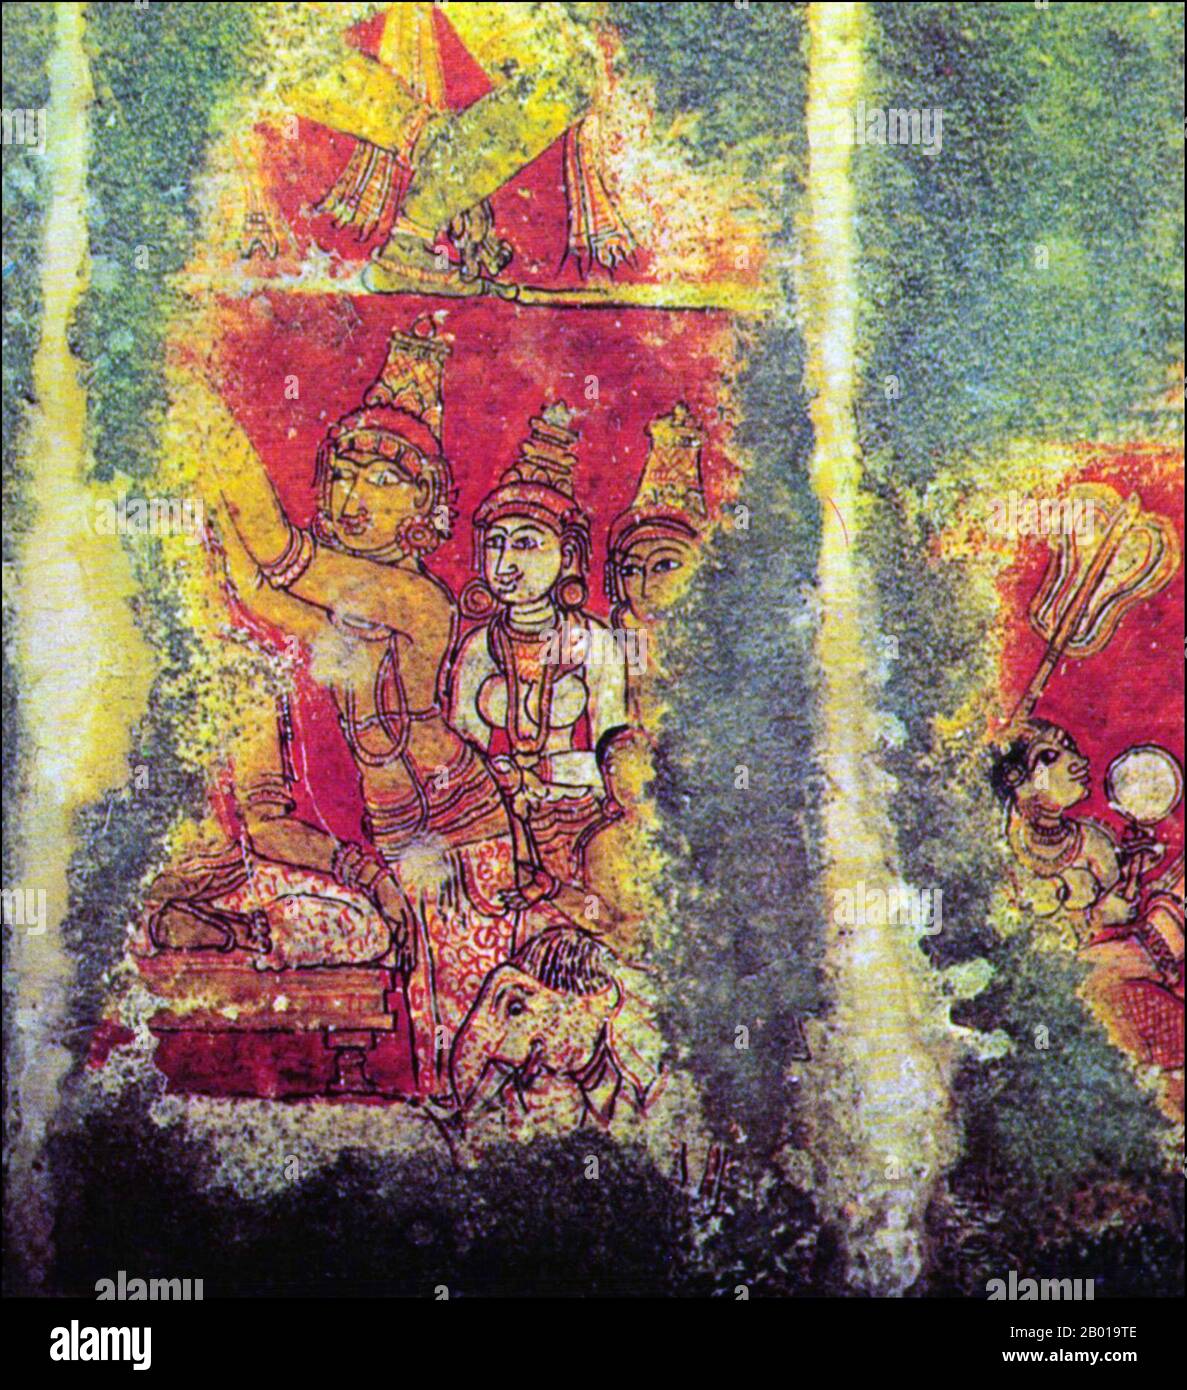 Indien: Wandgemälde vom Jaina Tempel in Thiruparruthikundram, Kanchipuram, Tamil Nadu, 15. Jahrhundert. Vardhamāna Tempel: Ein frühes Wandgemälde, das die Geburt eines Kindes darstellt. Stockfoto